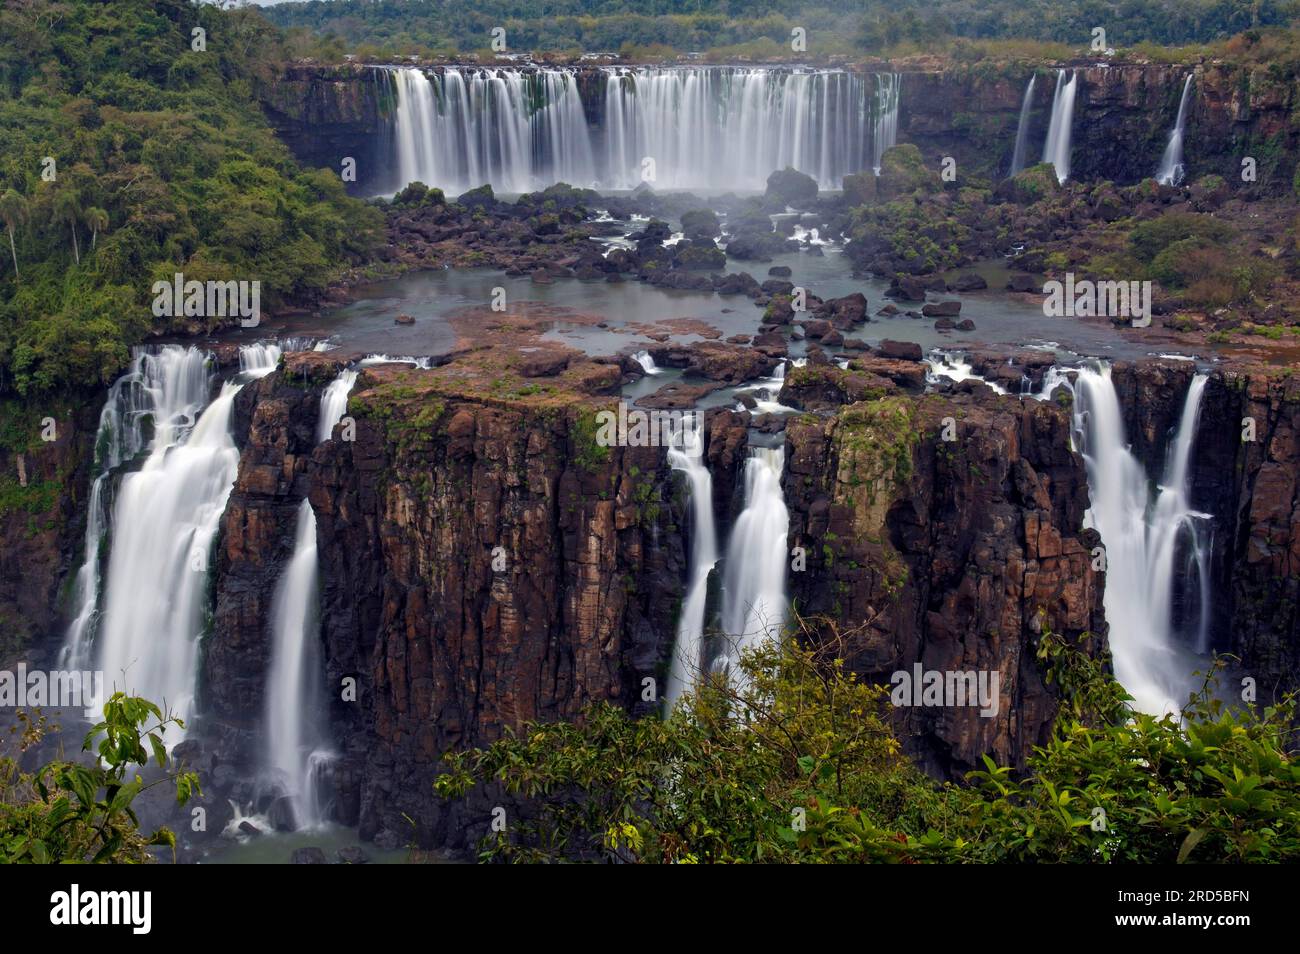 Chutes d'Iguaçu, chutes d'Iguaçu, chutes d'Iguaçu, Iguaçu, parc national d'Iguaçu, Brésil Banque D'Images